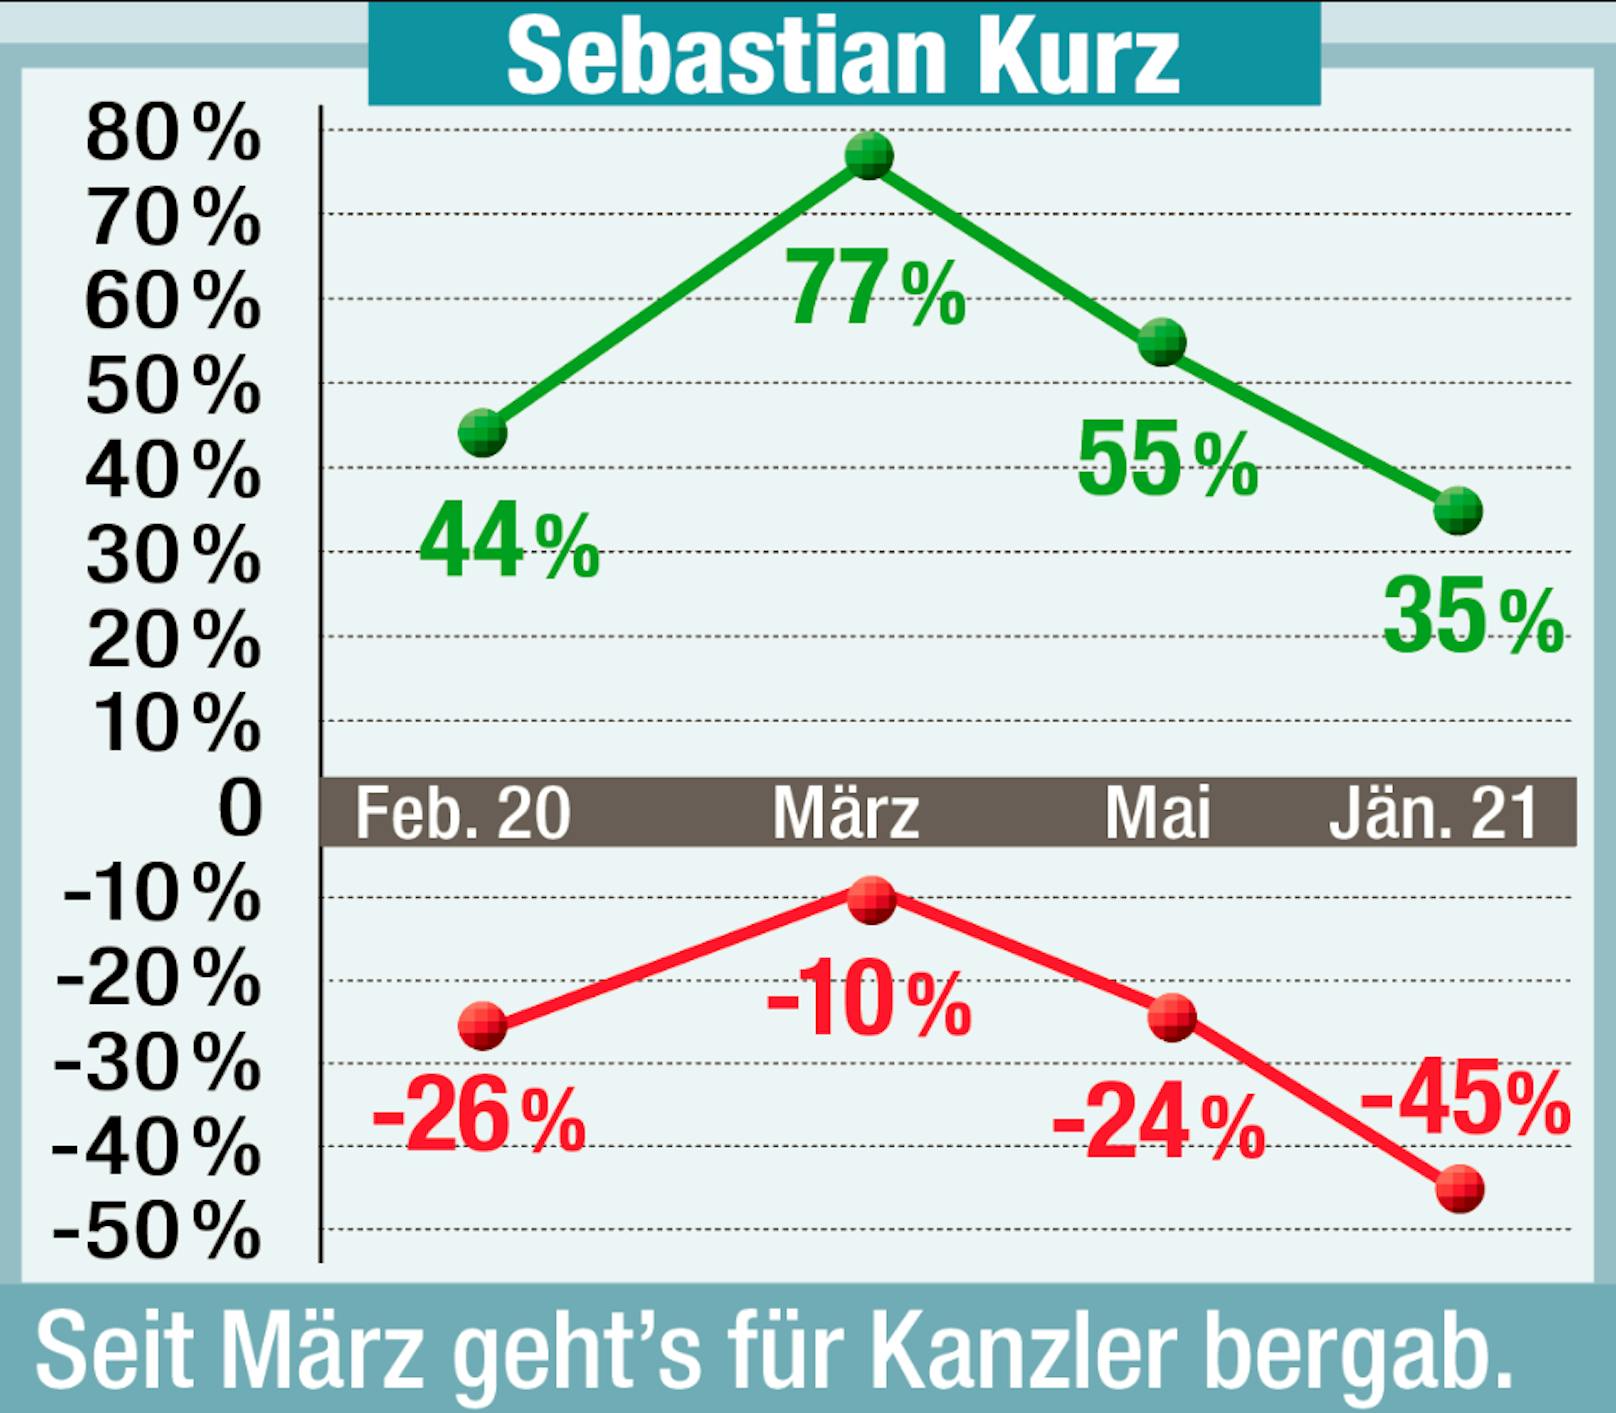 Sebastian Kurz verliert seit März an Beliebtheit.